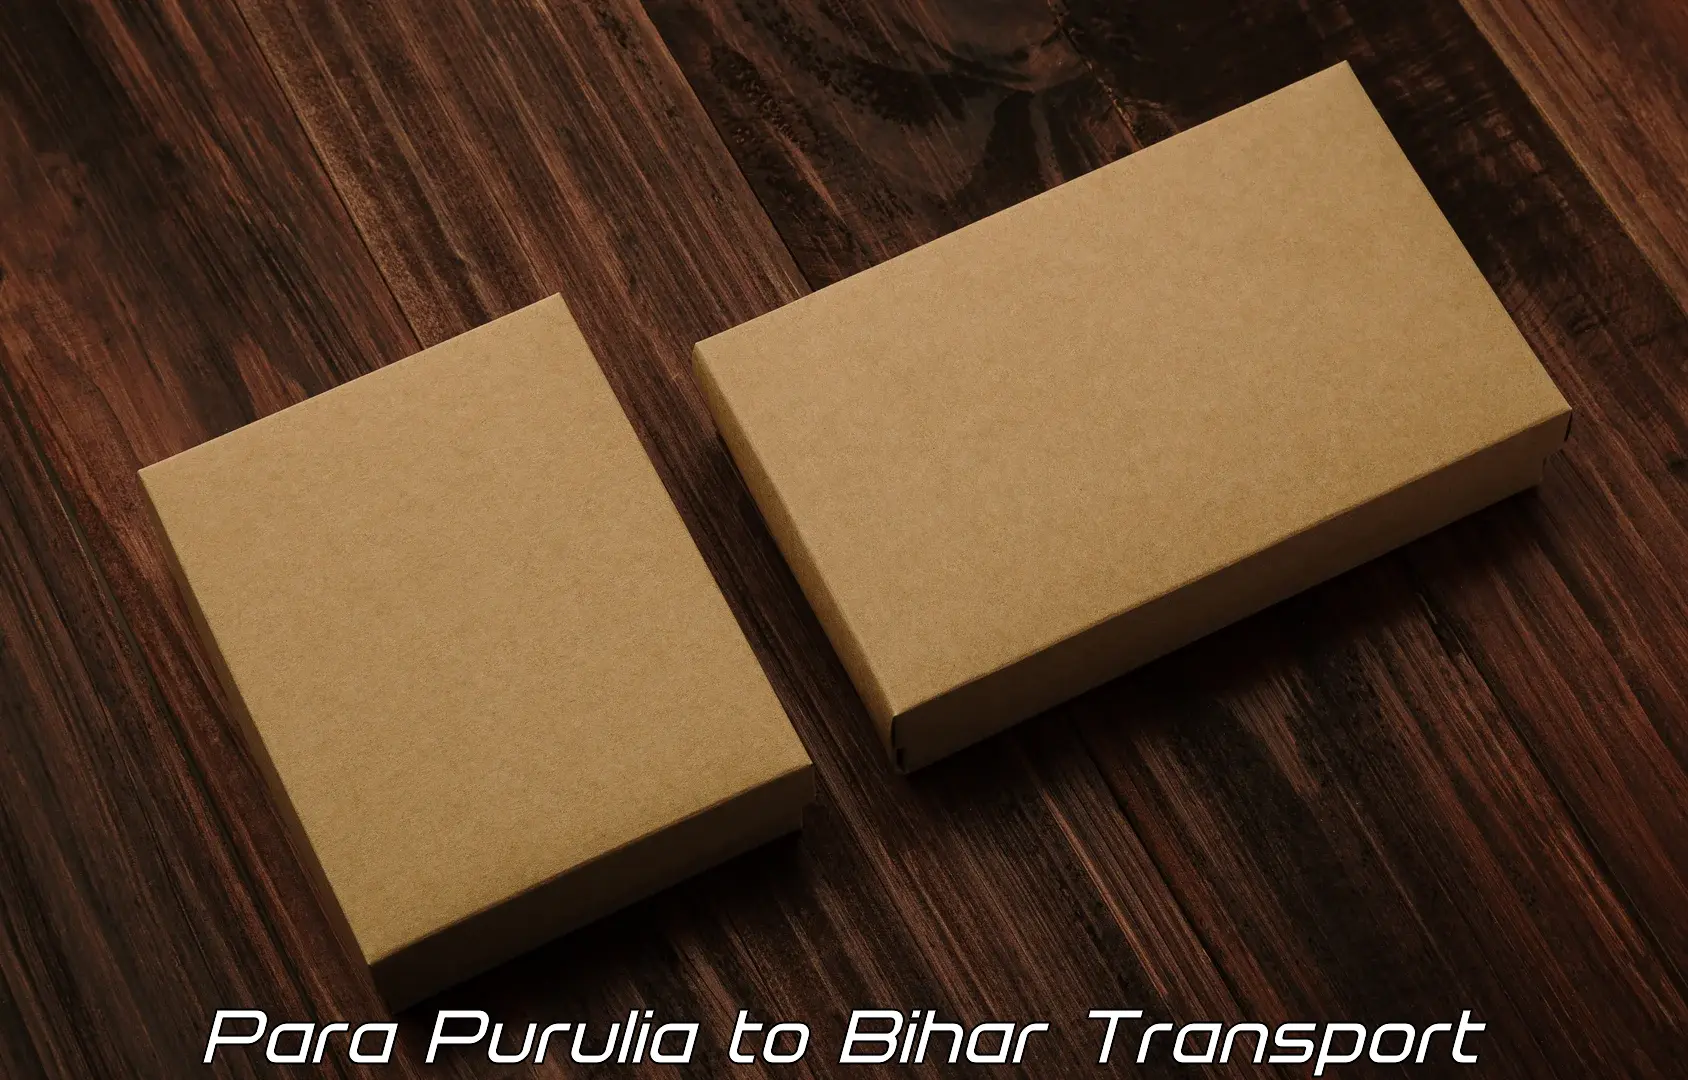 Container transport service Para Purulia to Mahnar Bazar